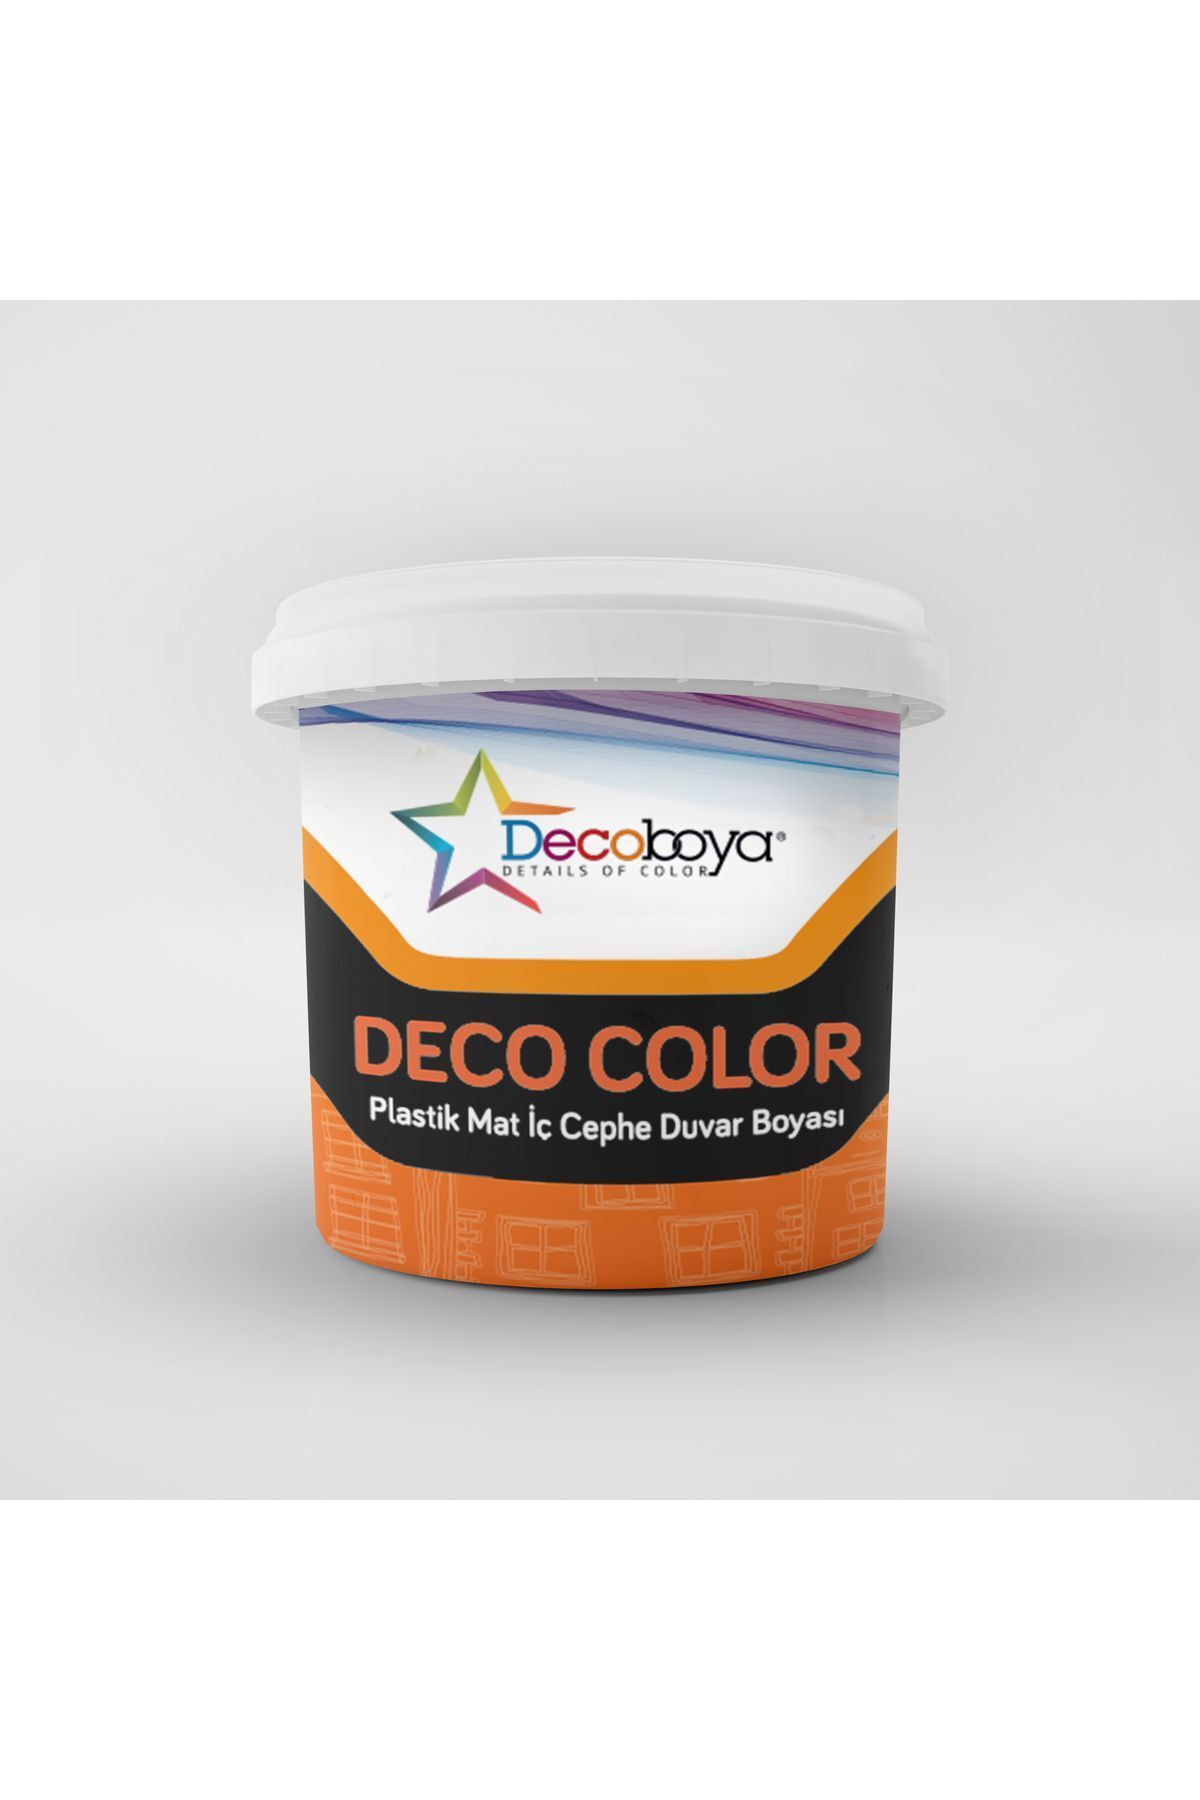 DecoBoya Color Plastik Mat Iç Cephe Duvar Boyası 3 kg Tüm Renkler